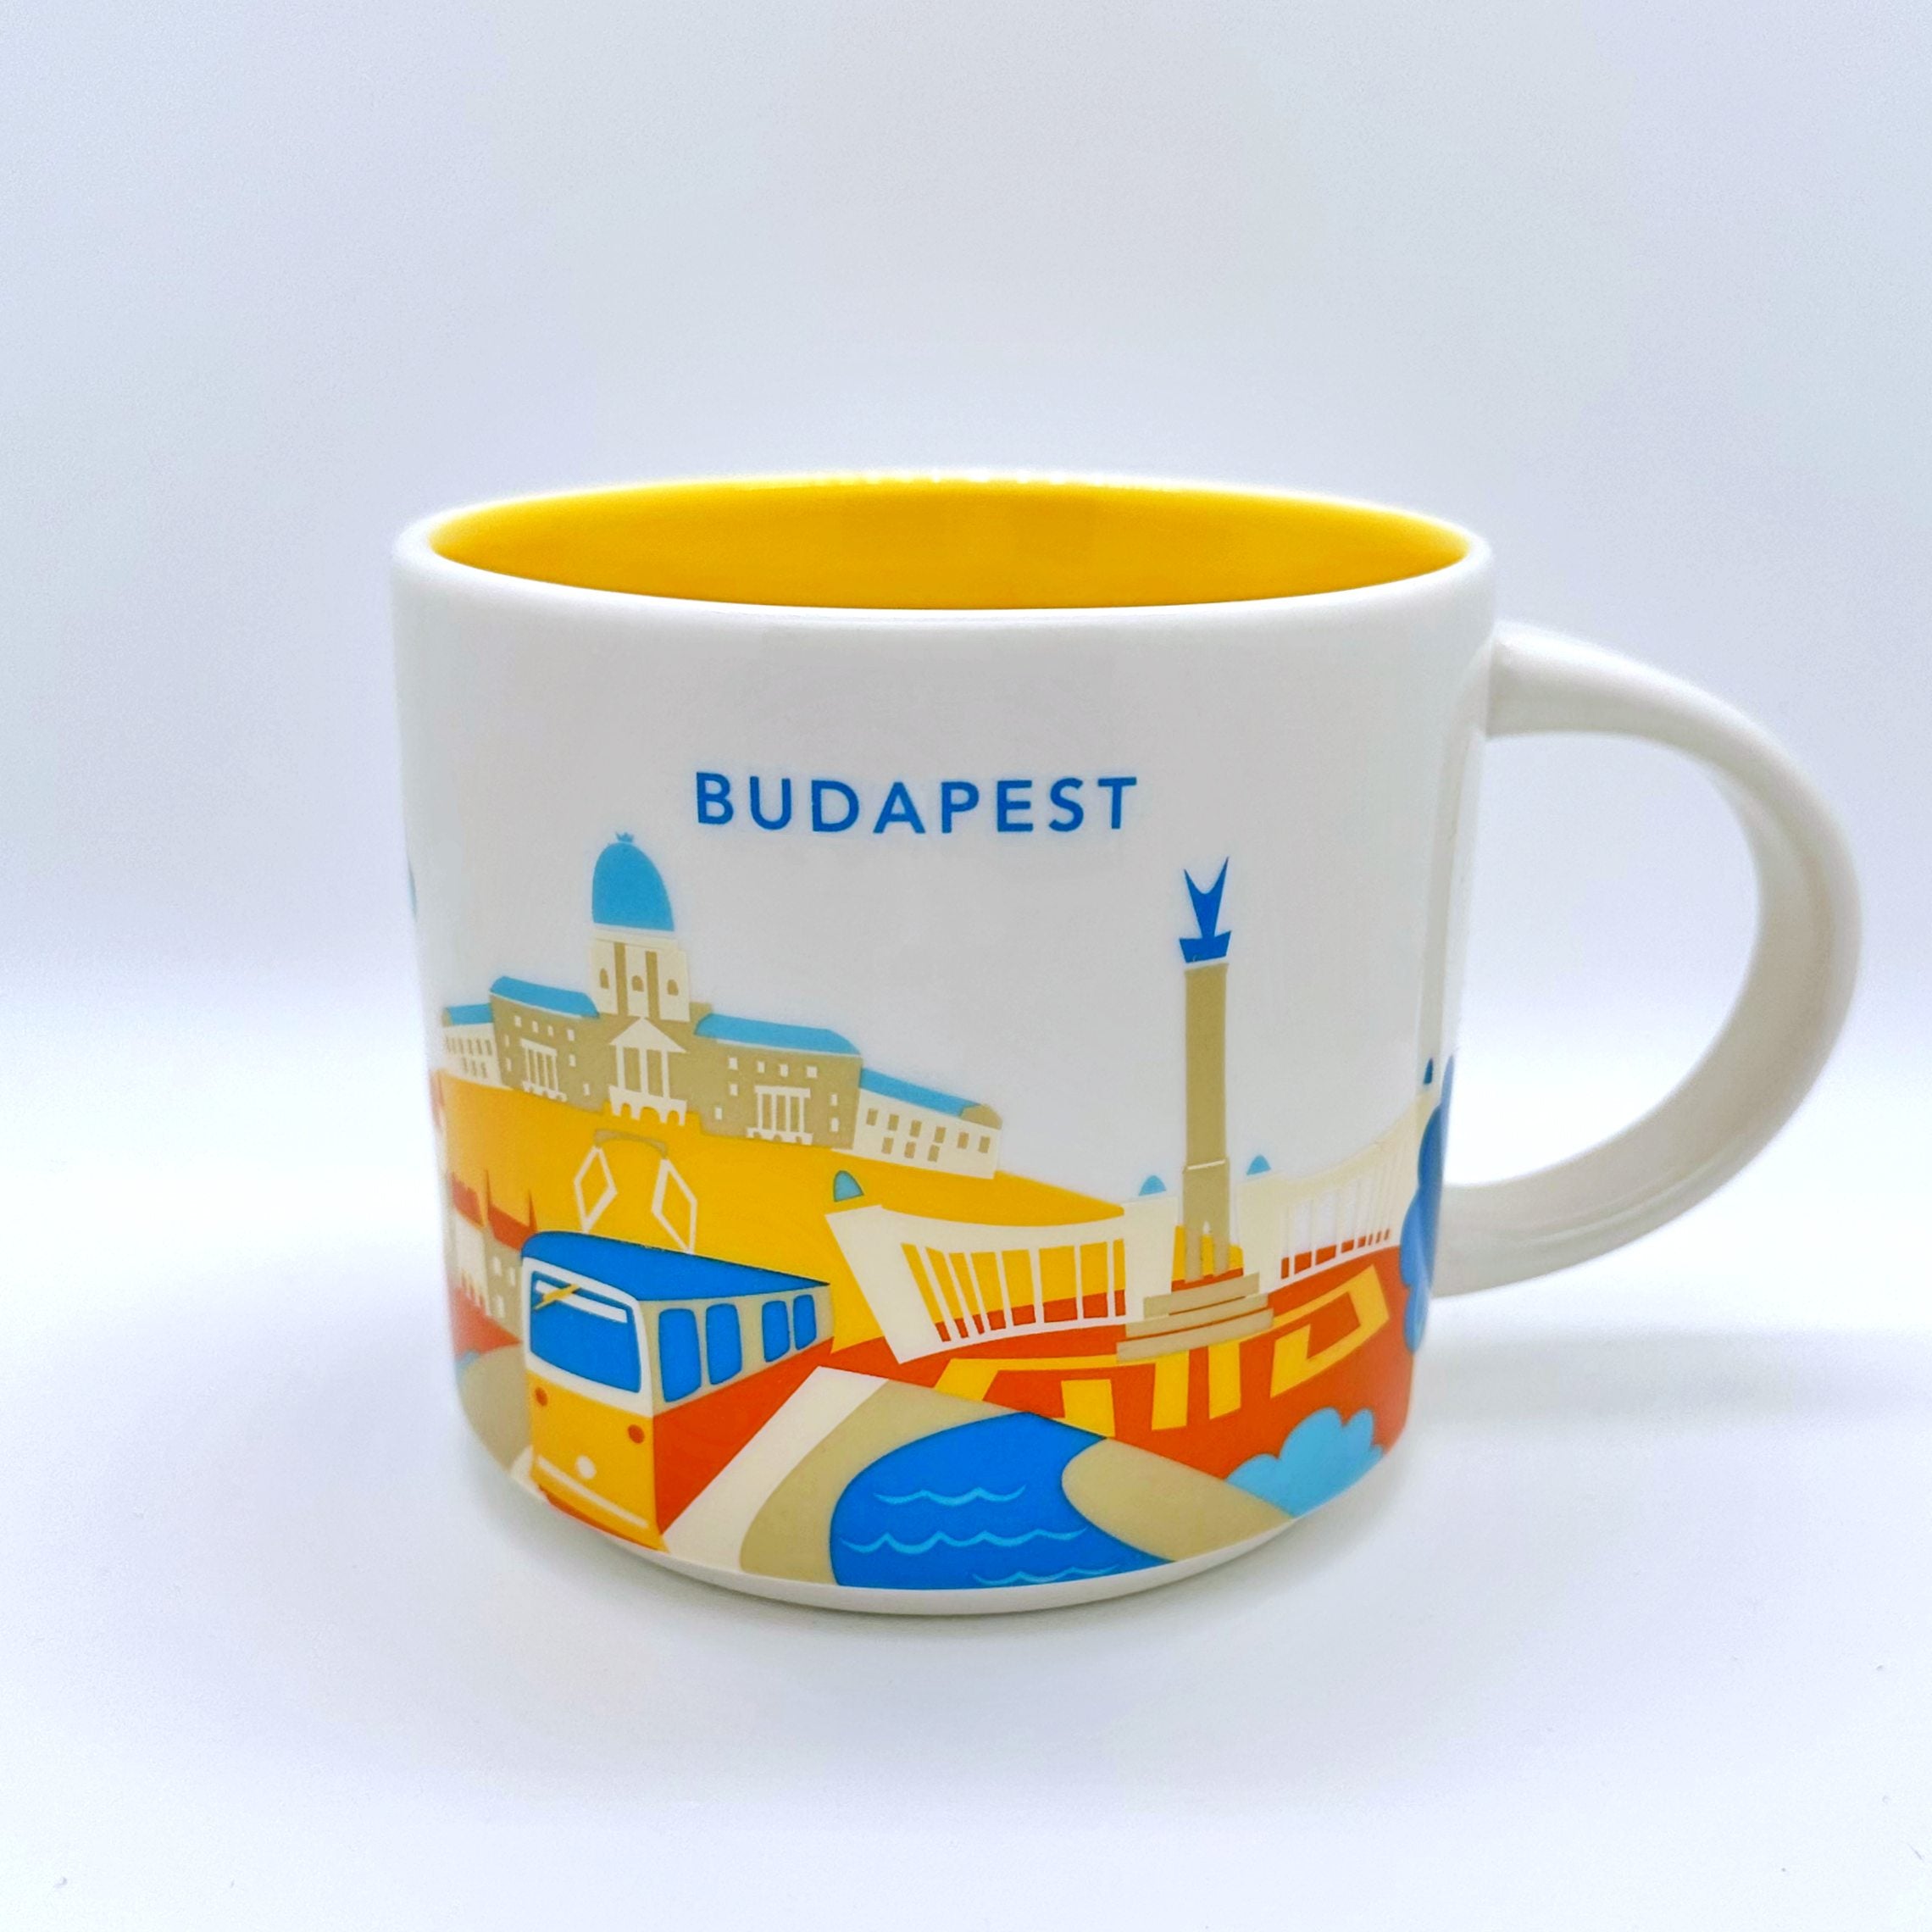 Kaffee Tee oder Cappuccino Tasse von Starbucks mit gemalten Bildern aus der Stadt Budapest